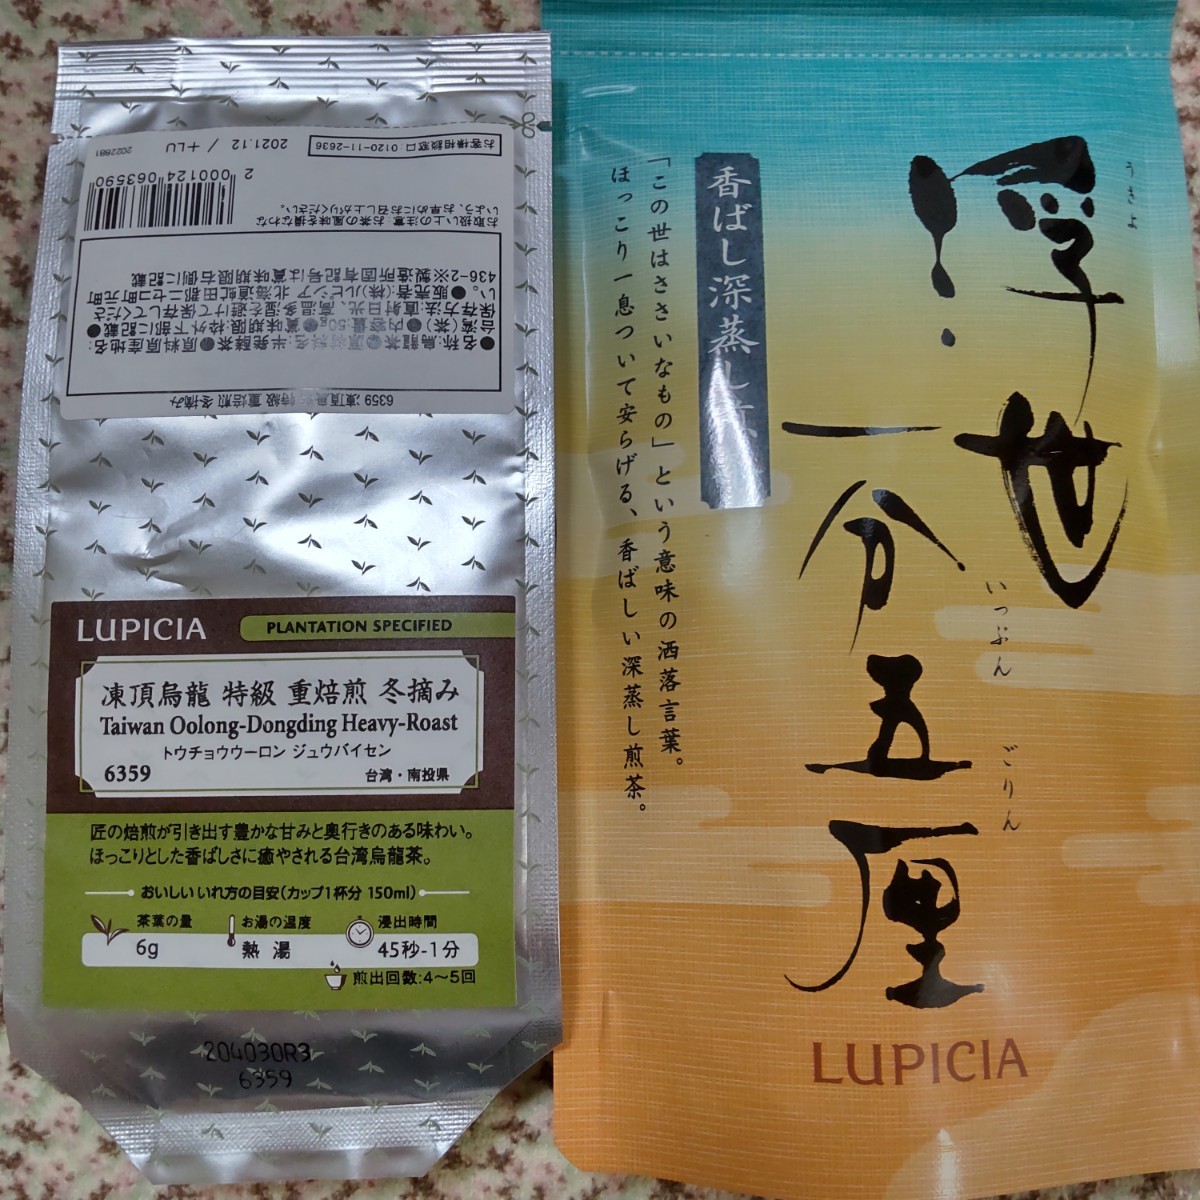 【ルピシア LUPICIA】 日本茶&中国茶セット